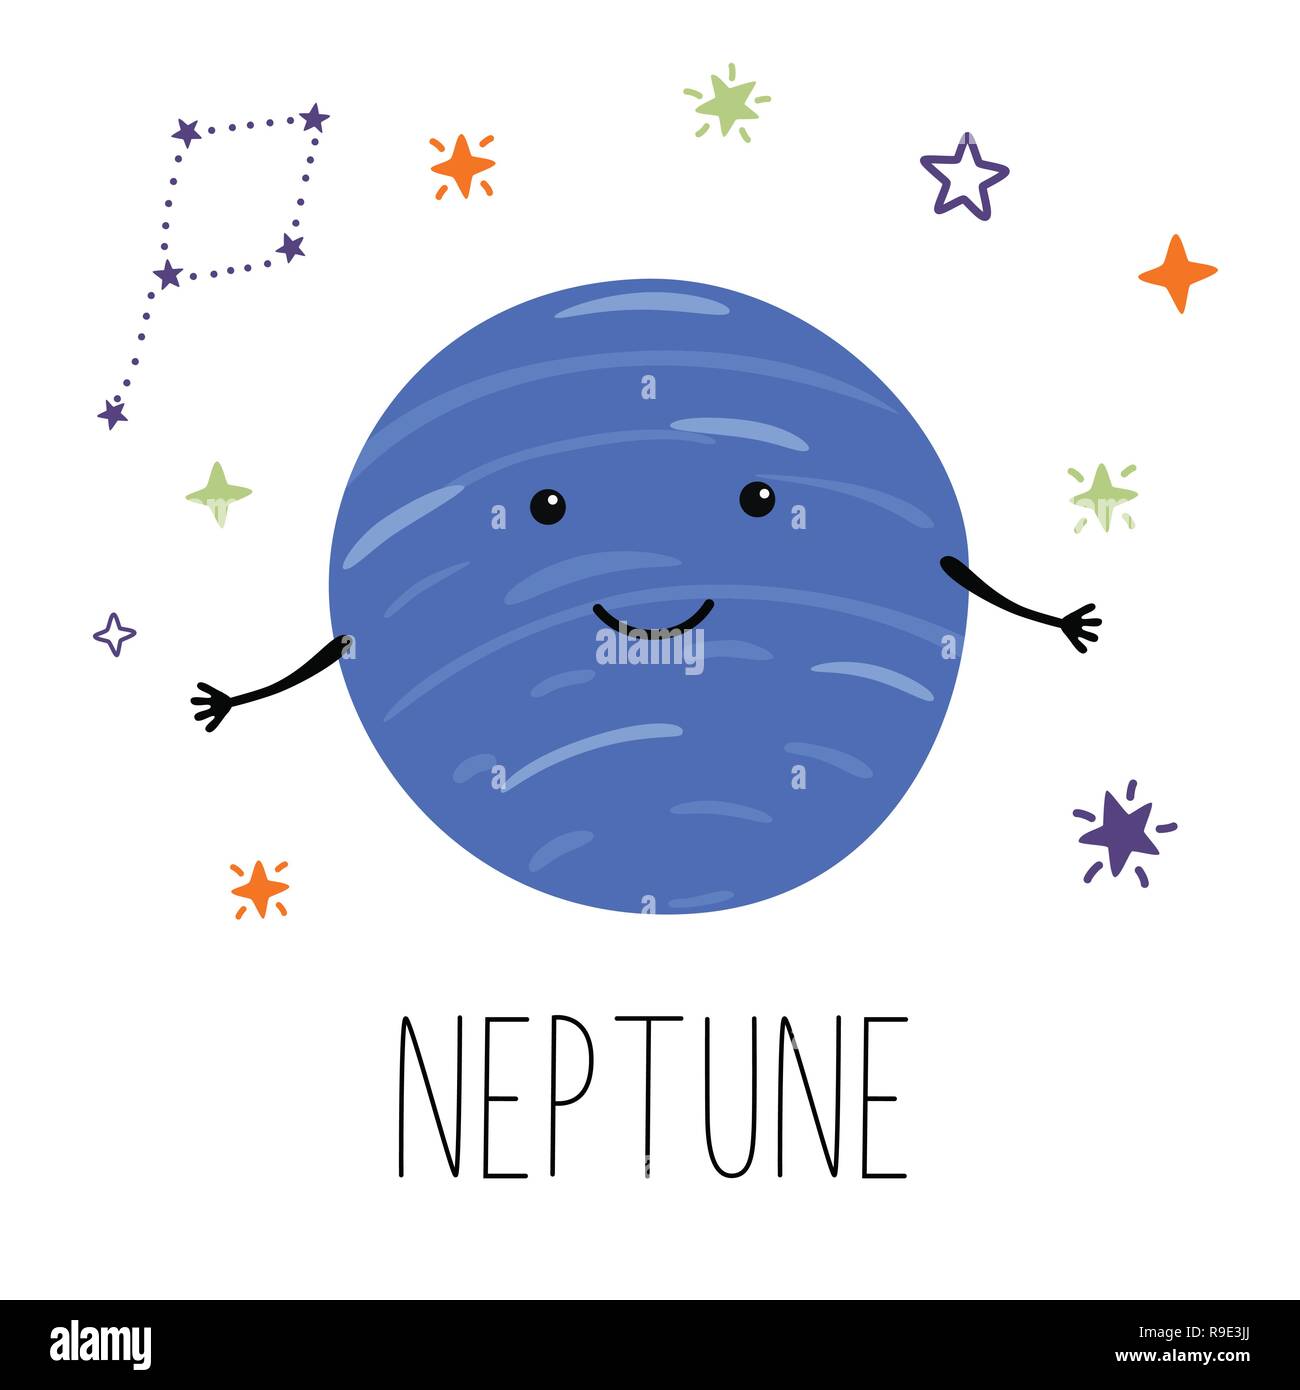 La Planete Neptune Planete Avec Les Mains Et Les Yeux Vector Illustration Pour Les Enfants On White Background Isoles Cute Imprimer Produits Pour Bebes Image Vectorielle Stock Alamy